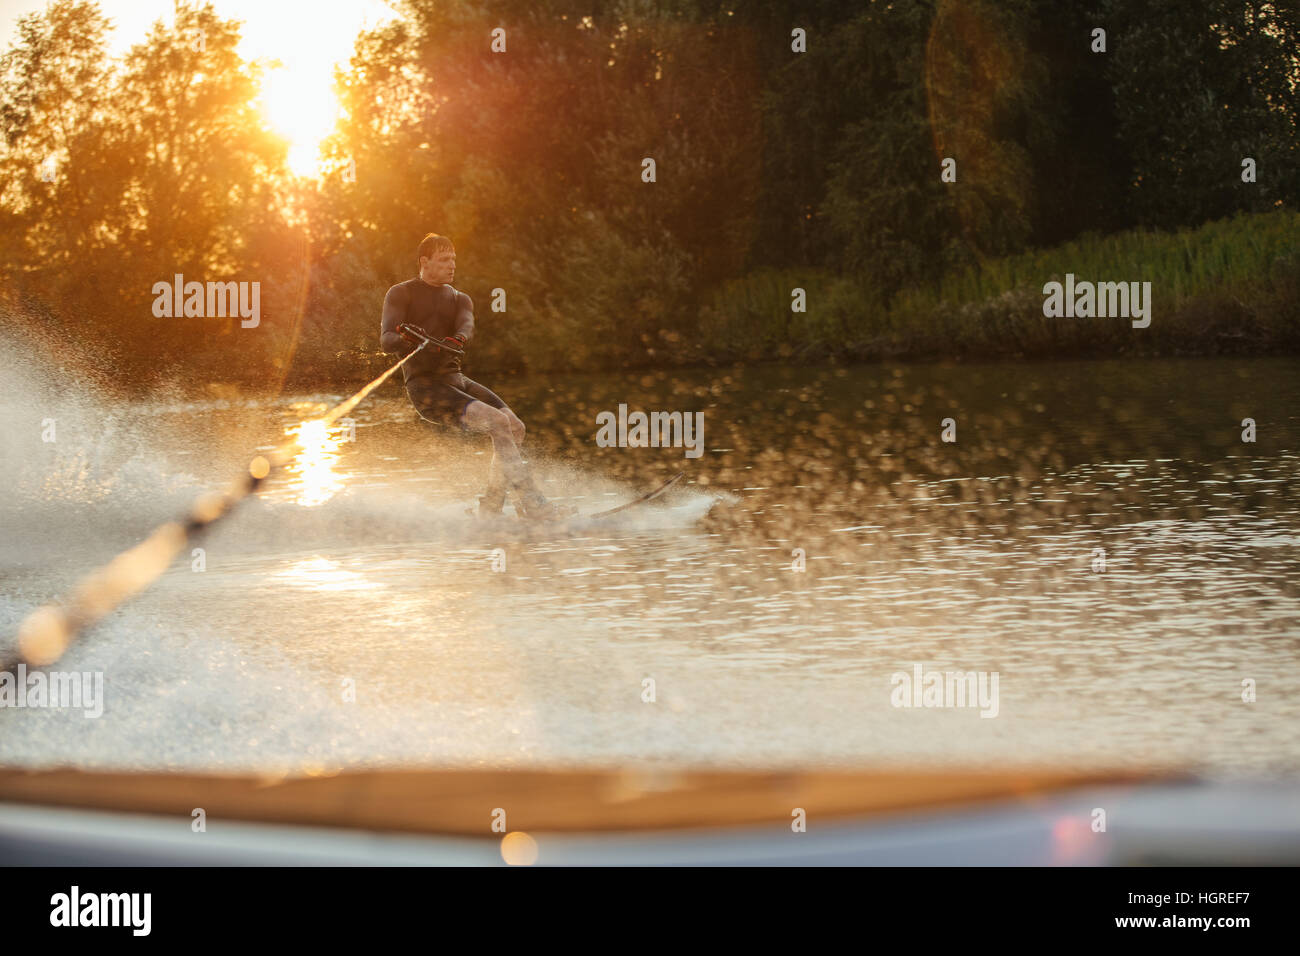 Mann reitet Wakeboard auf Welle der Motorboot in See bei Sonnenuntergang. Männliche Sportler in Aktion, Wasserski auf See. Stockfoto